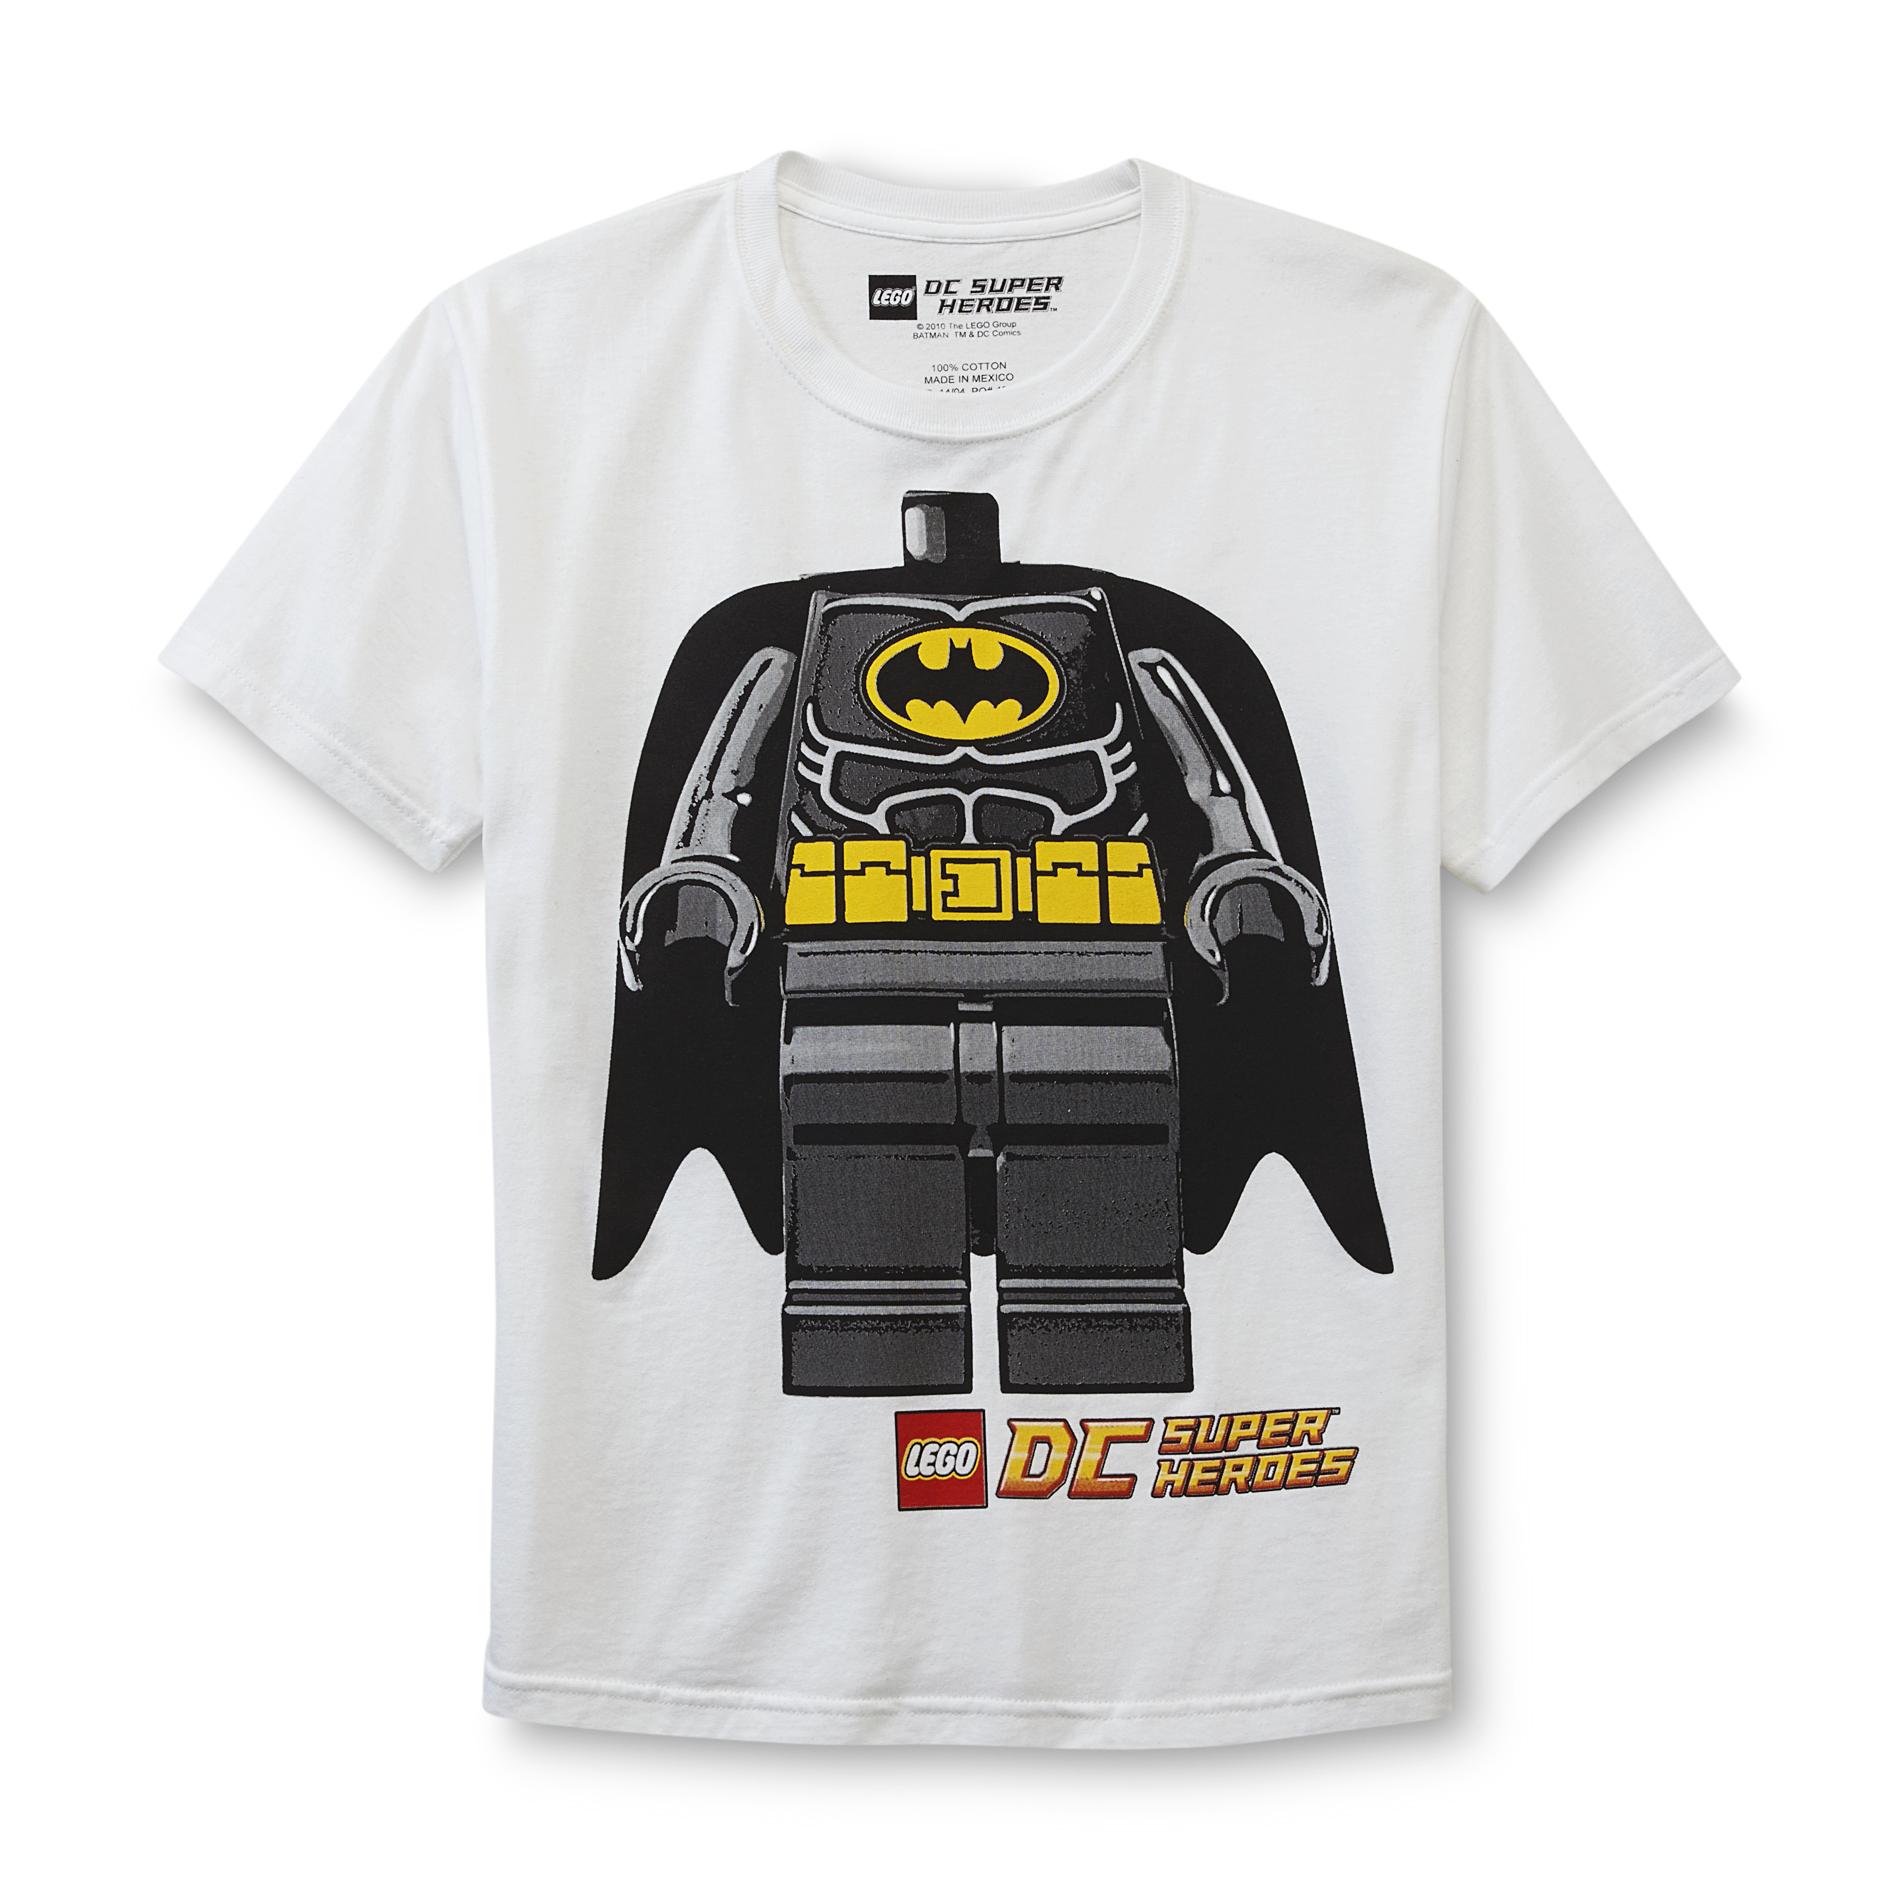 LEGO Super Heroes Boy's T-Shirt - Batman